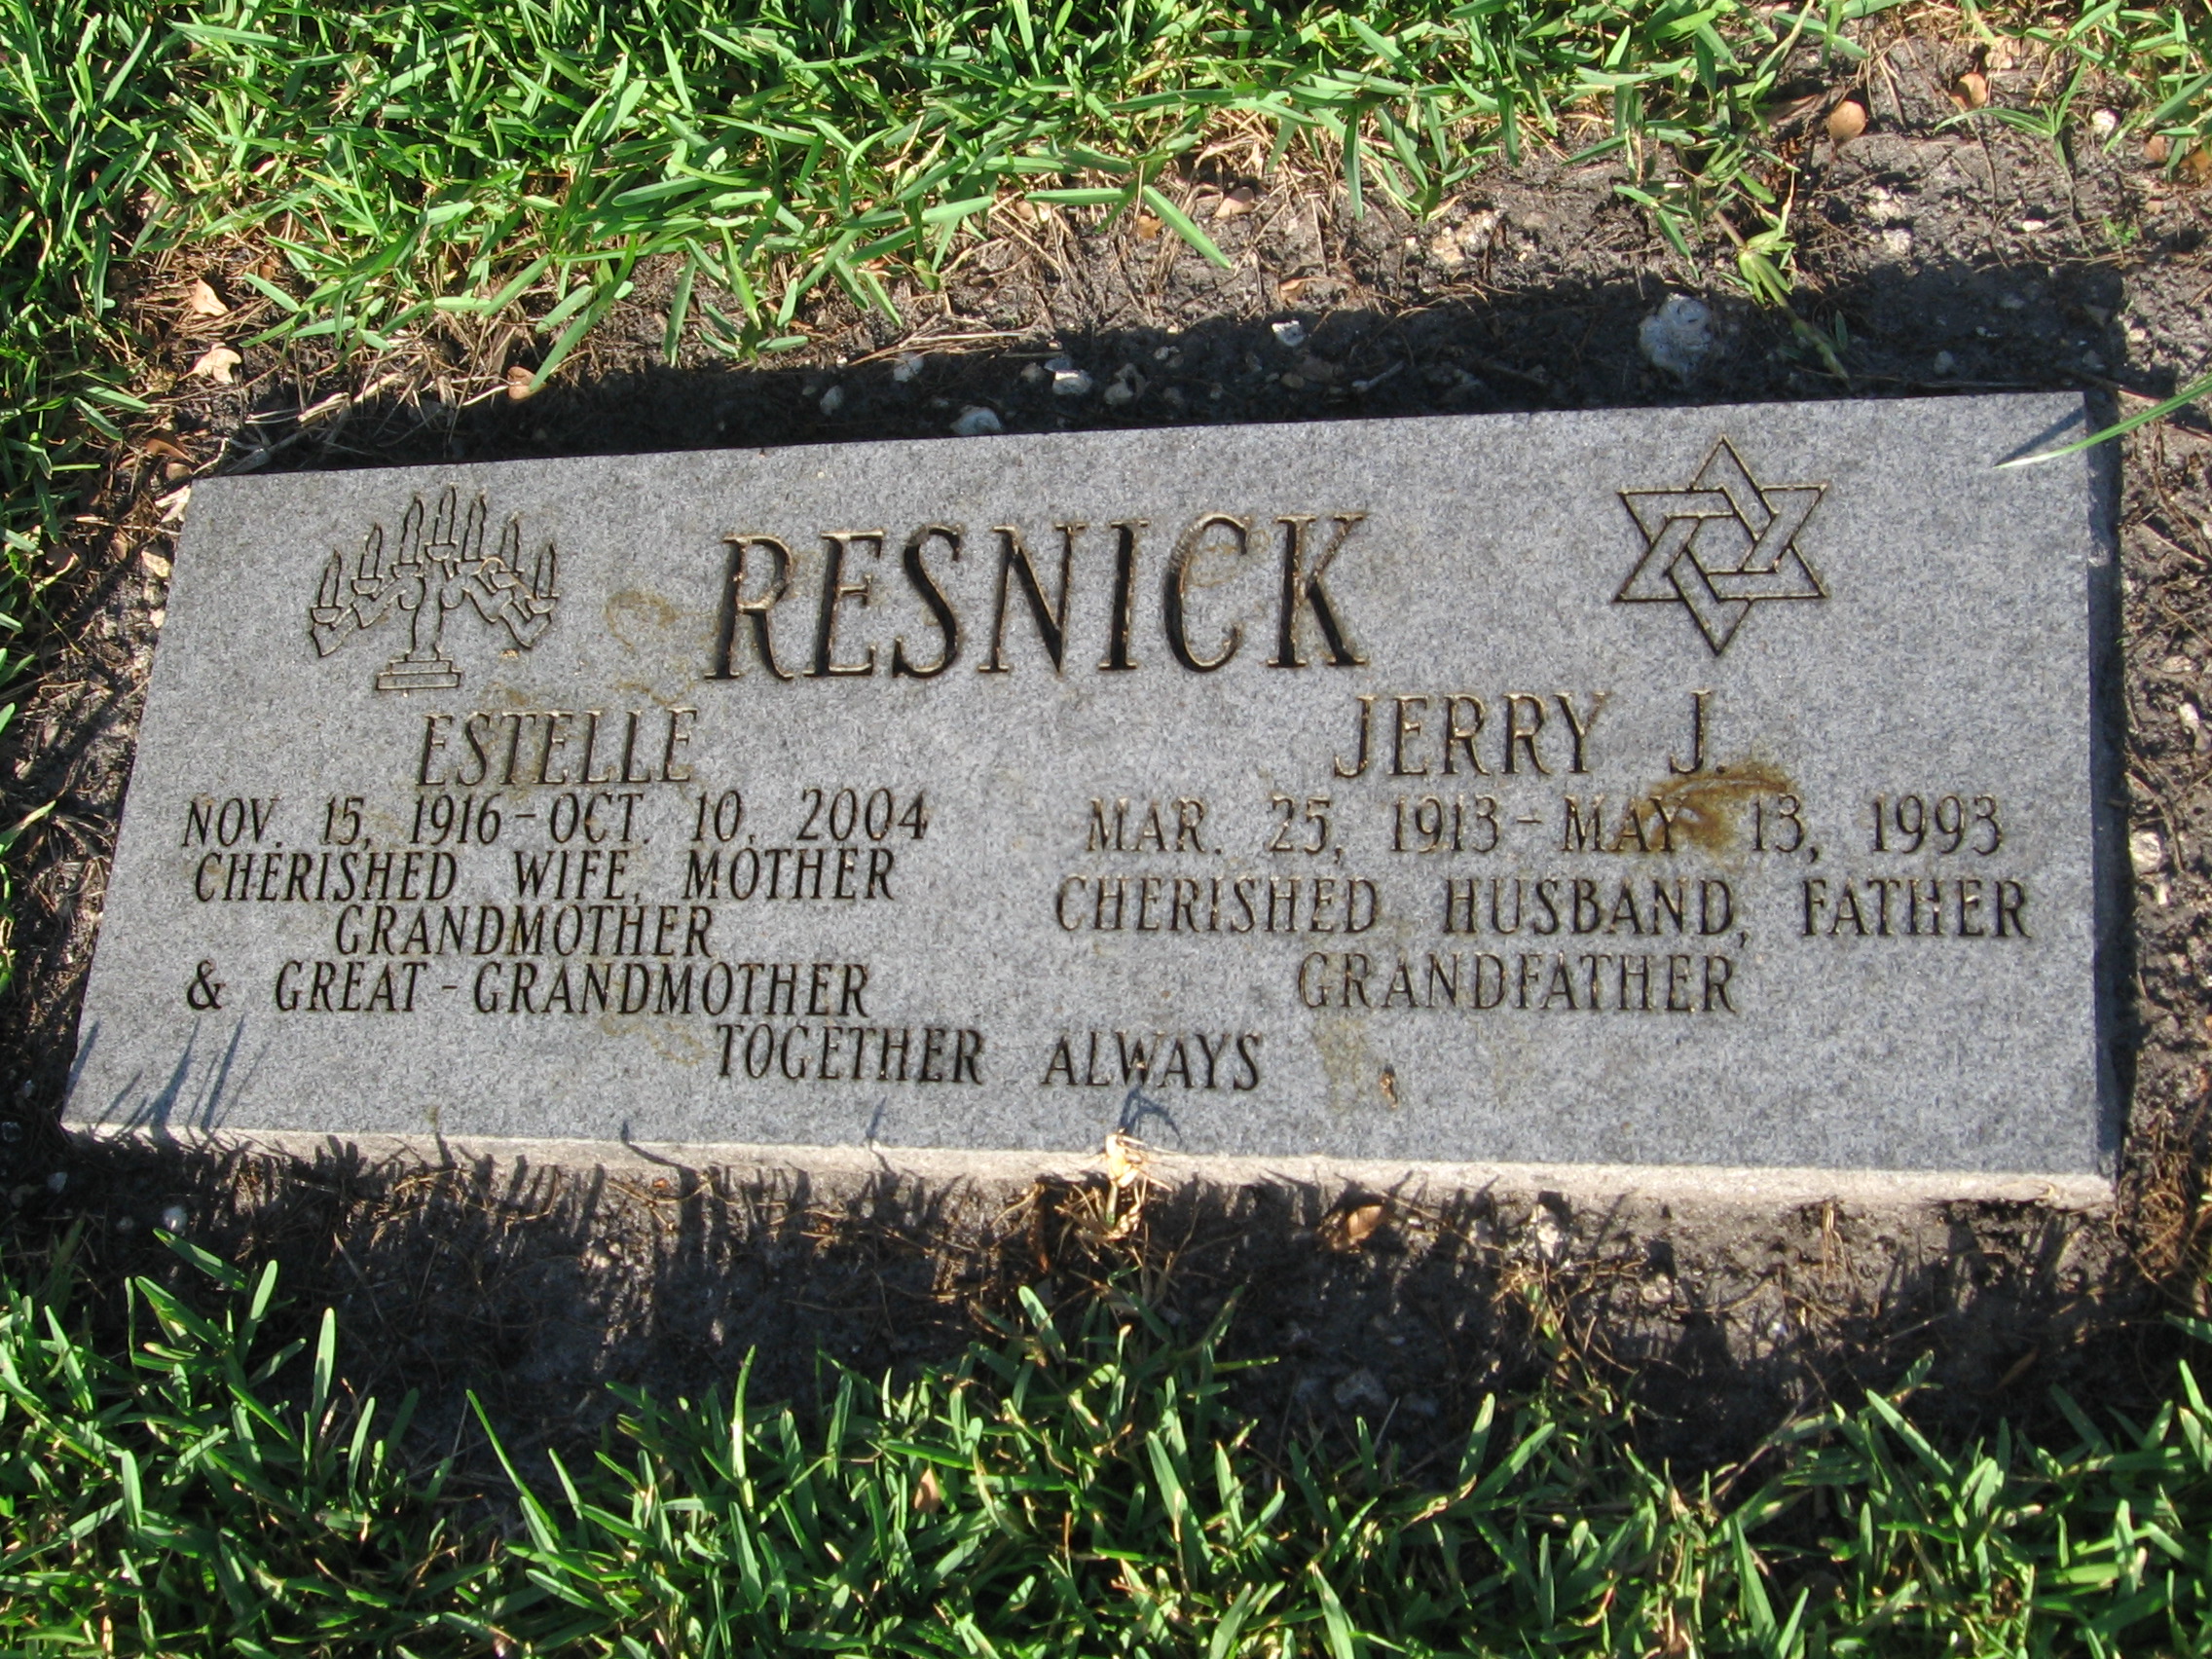 Jerry J Resnick